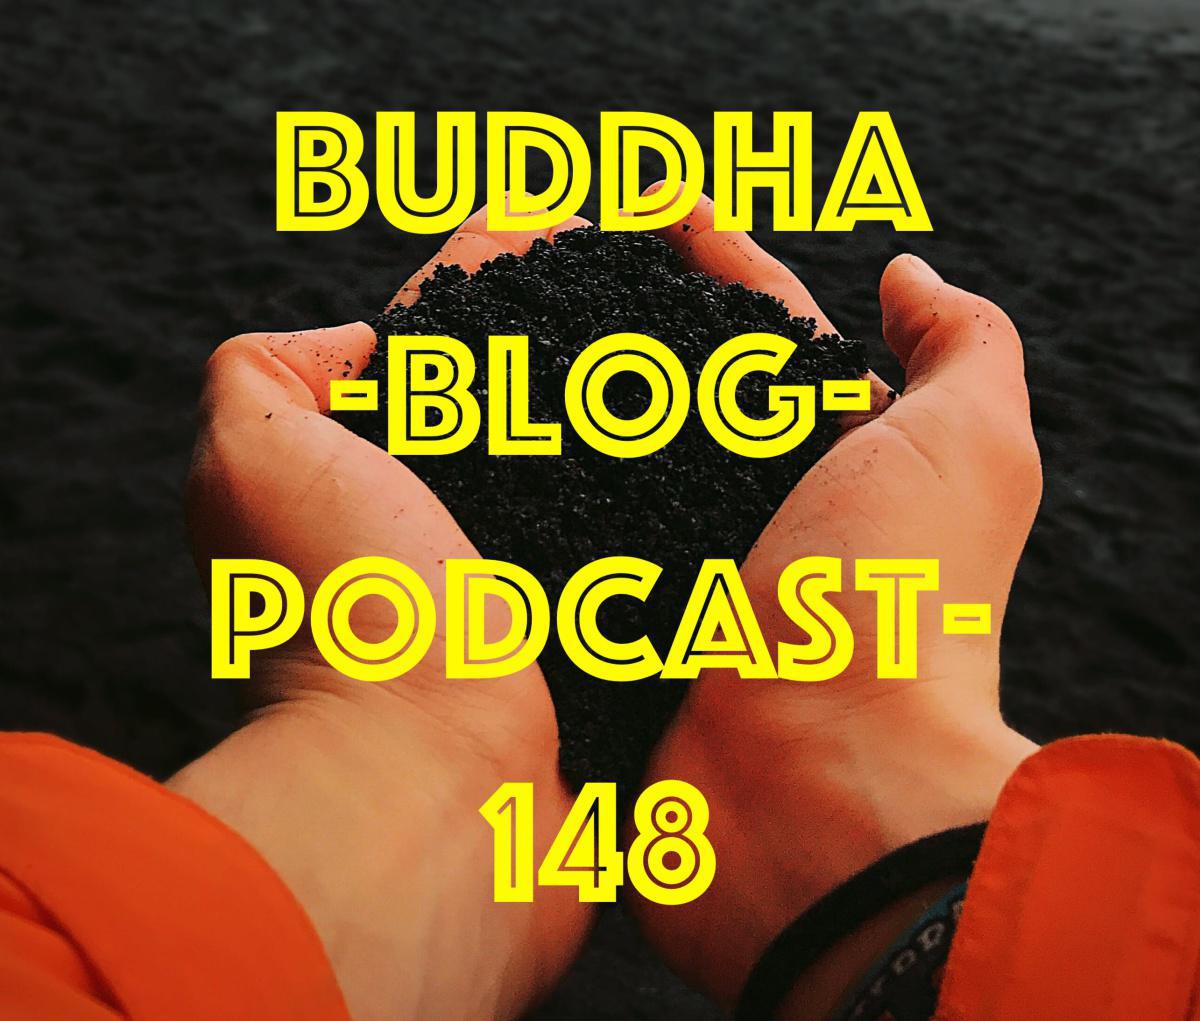 Buddha-Blog-Podcast Folge 148